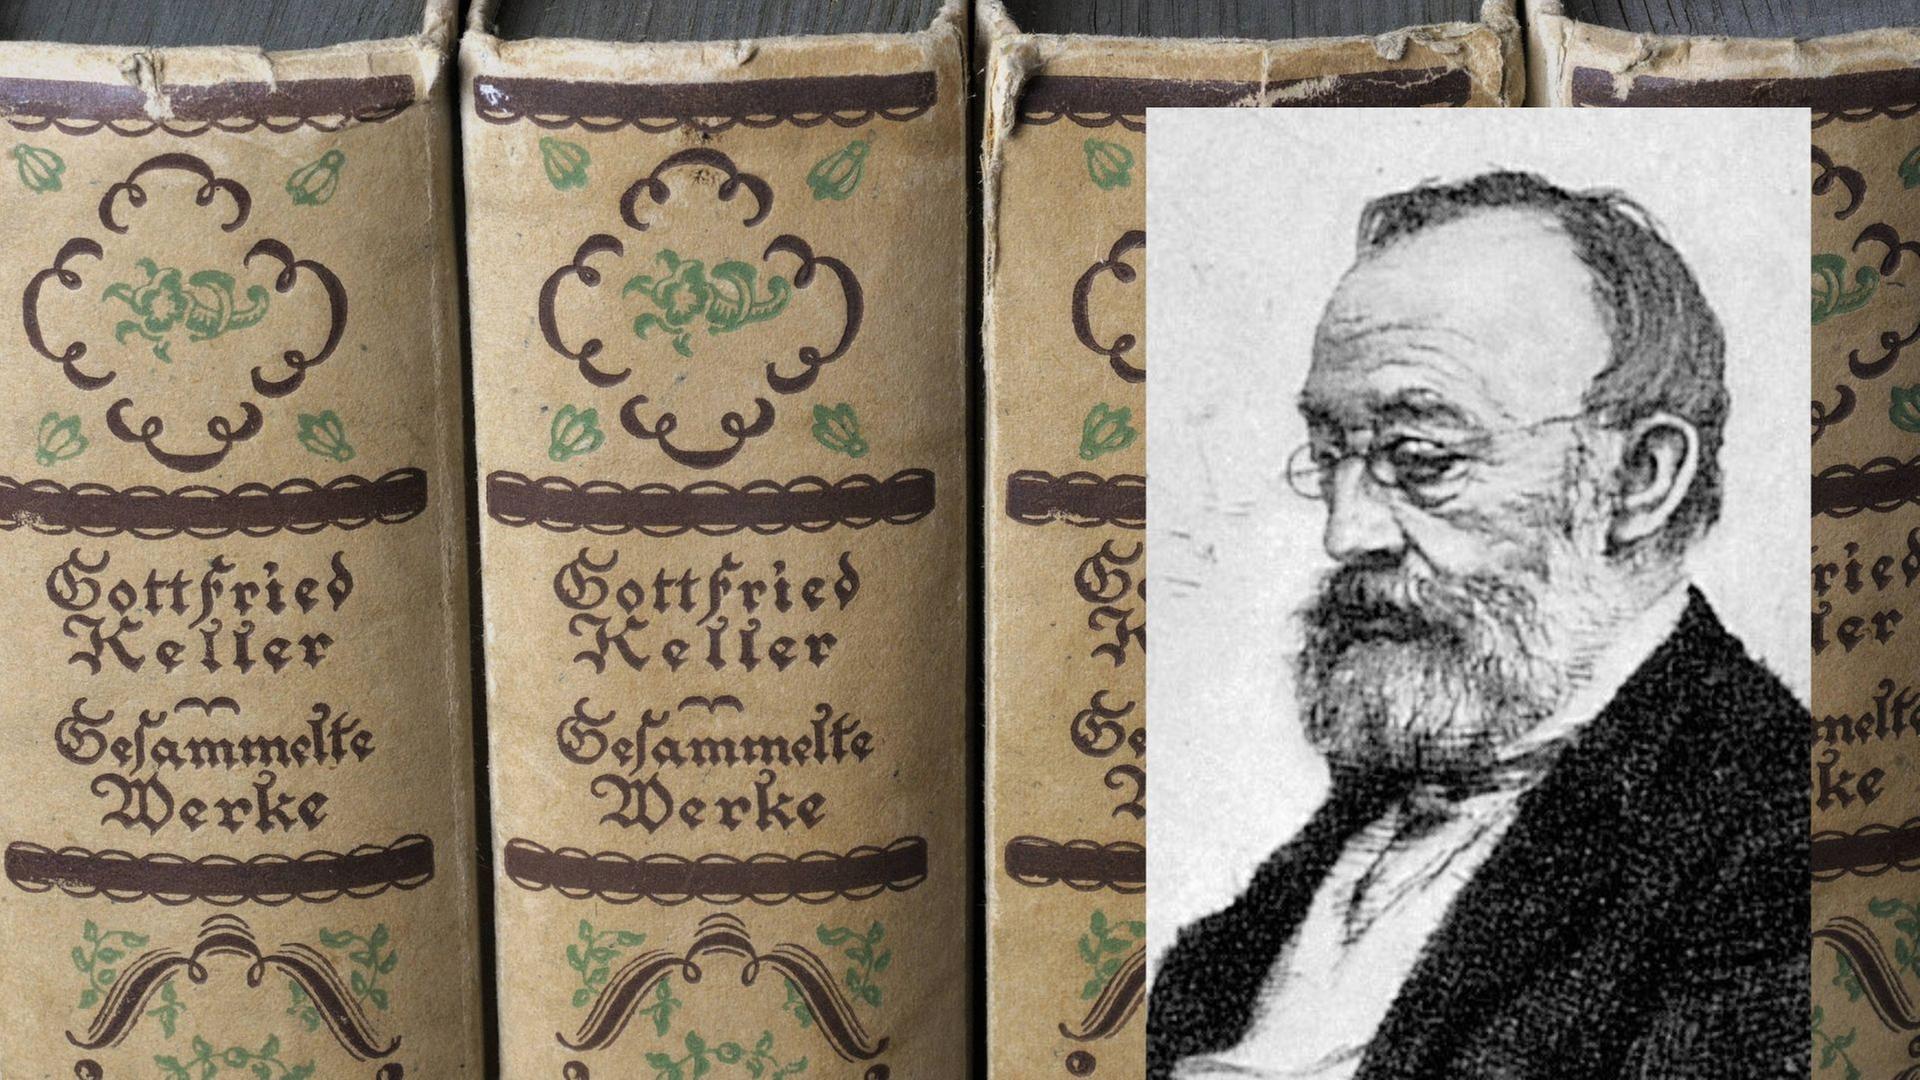 Buchrücken: Gottfried Keller: Gesammelte Werke, Zeitgenössisches Porträt des schweizer Schriftstellers Gottfried Keller (1819-1890)